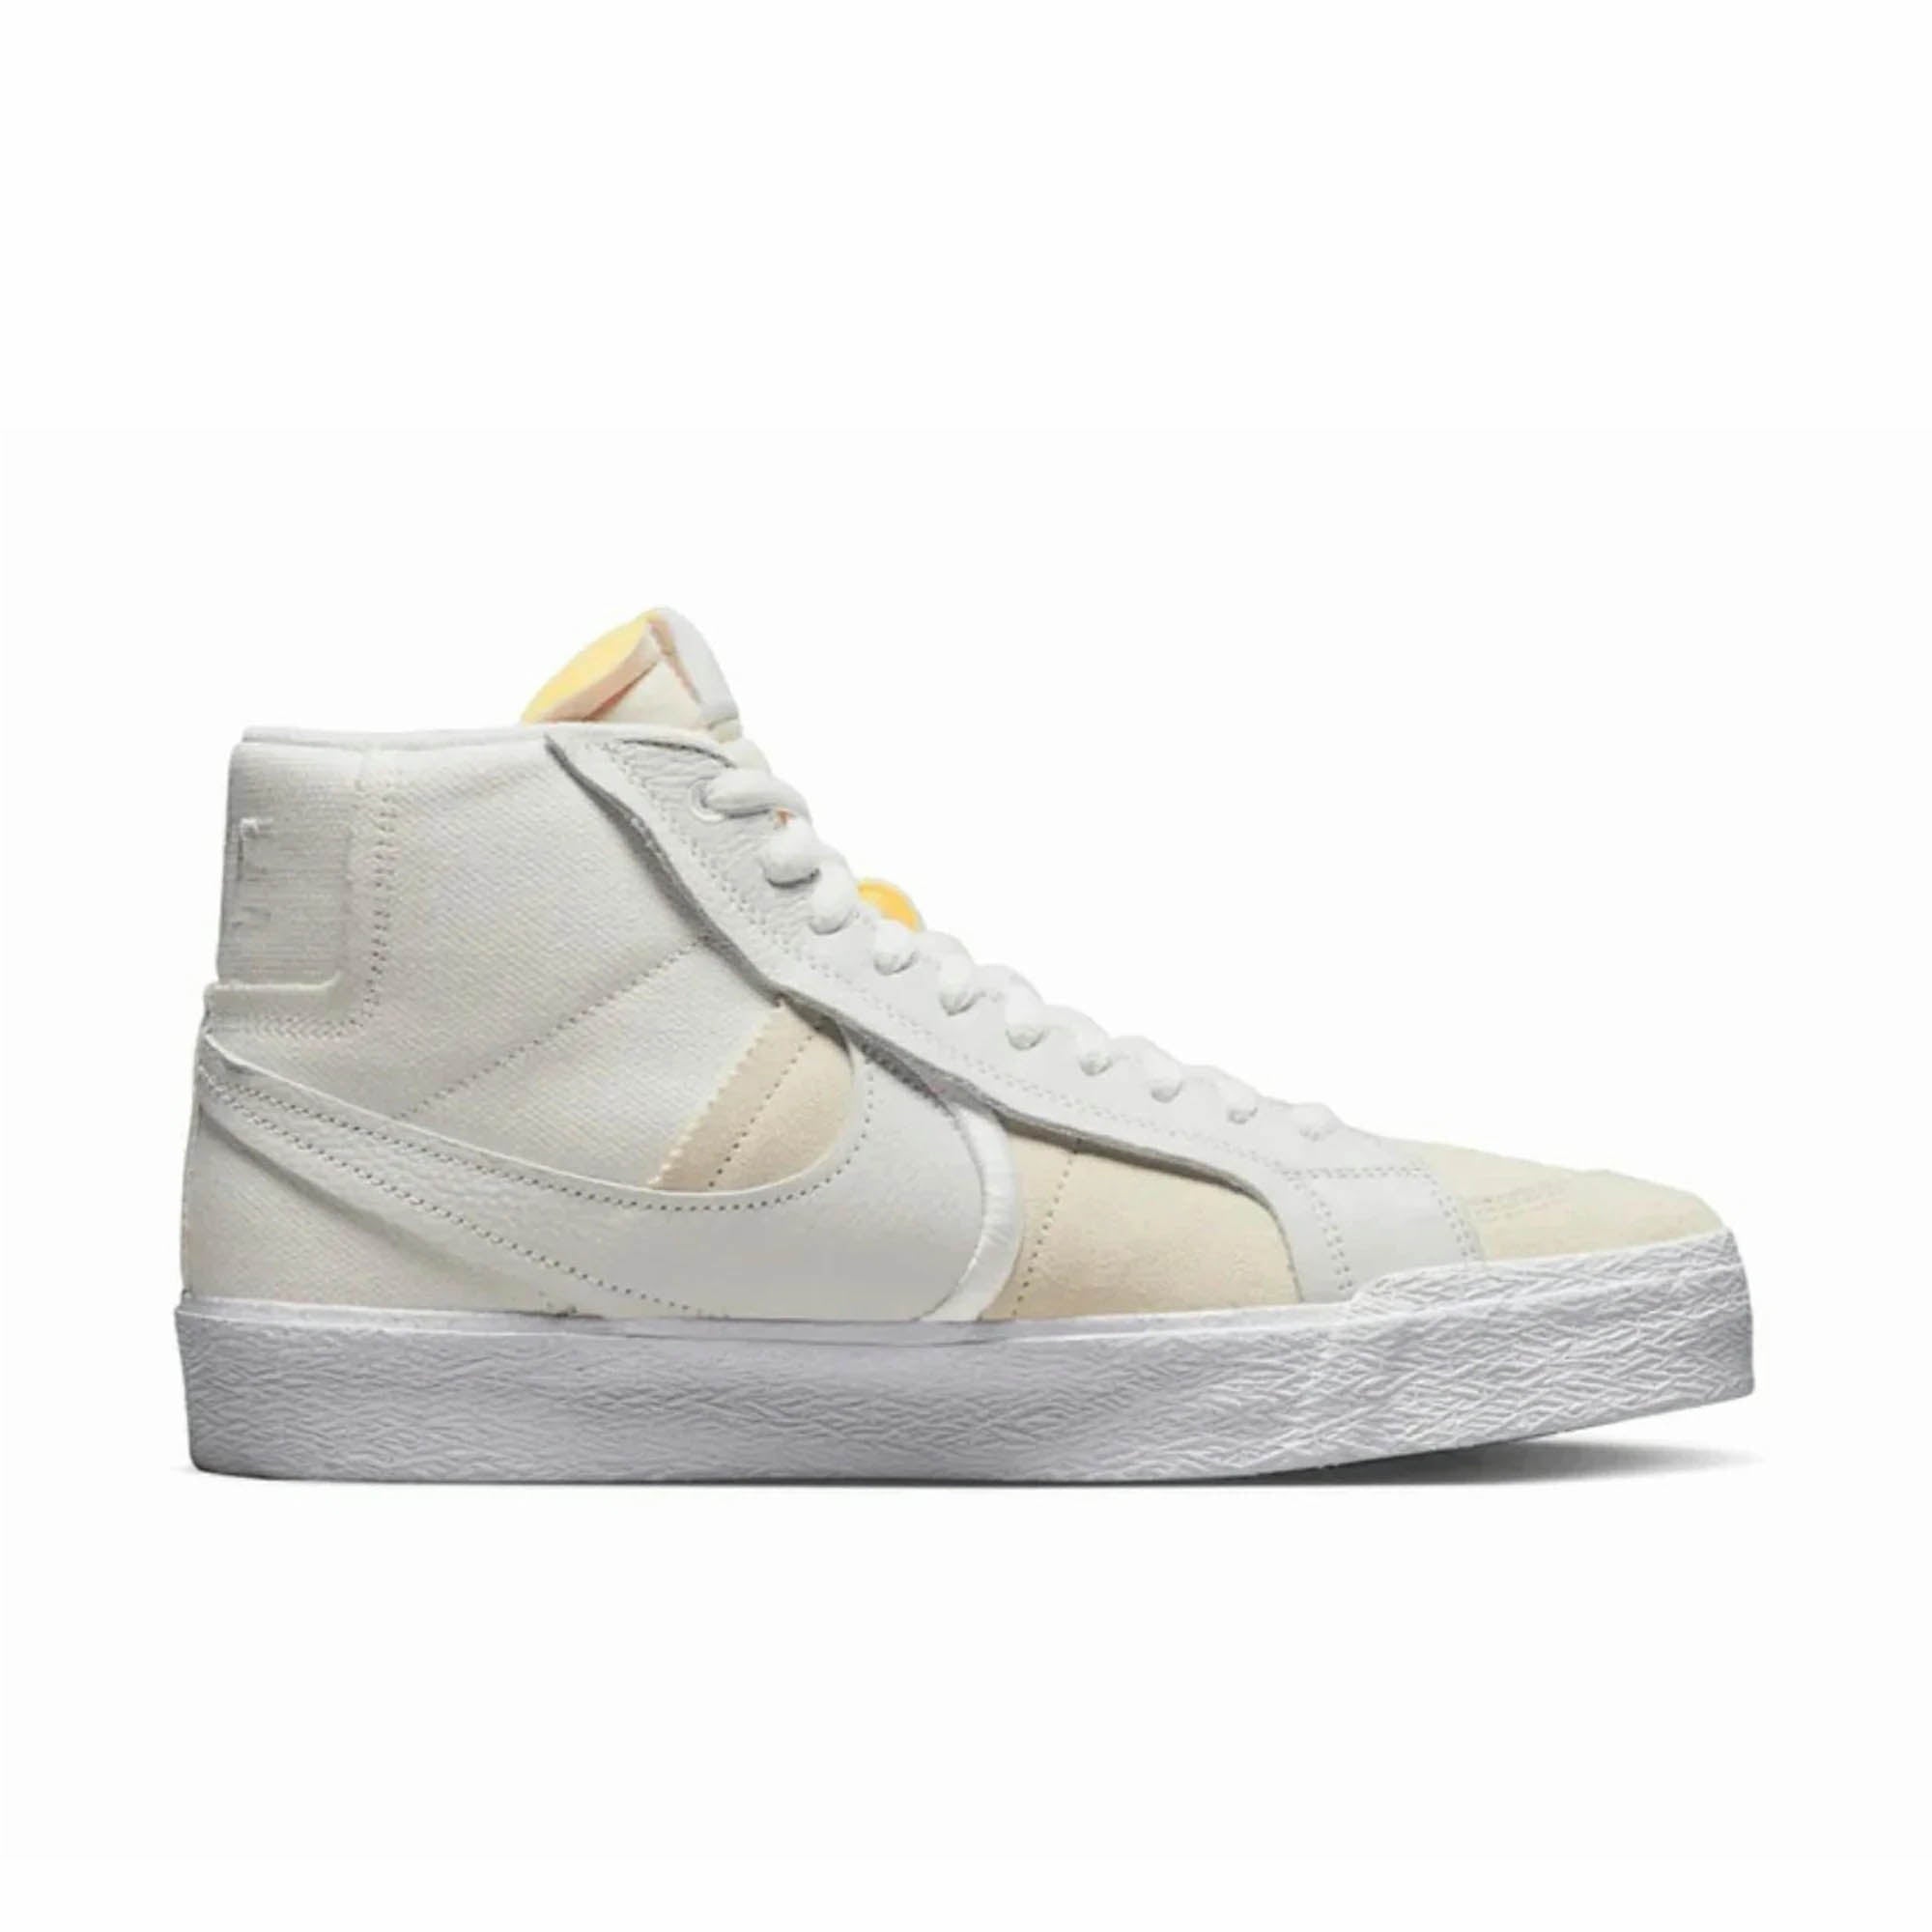 Nike SB Zoom Blazer Mid Premium- White-Summit White Sneaker Nike Skateboarding 